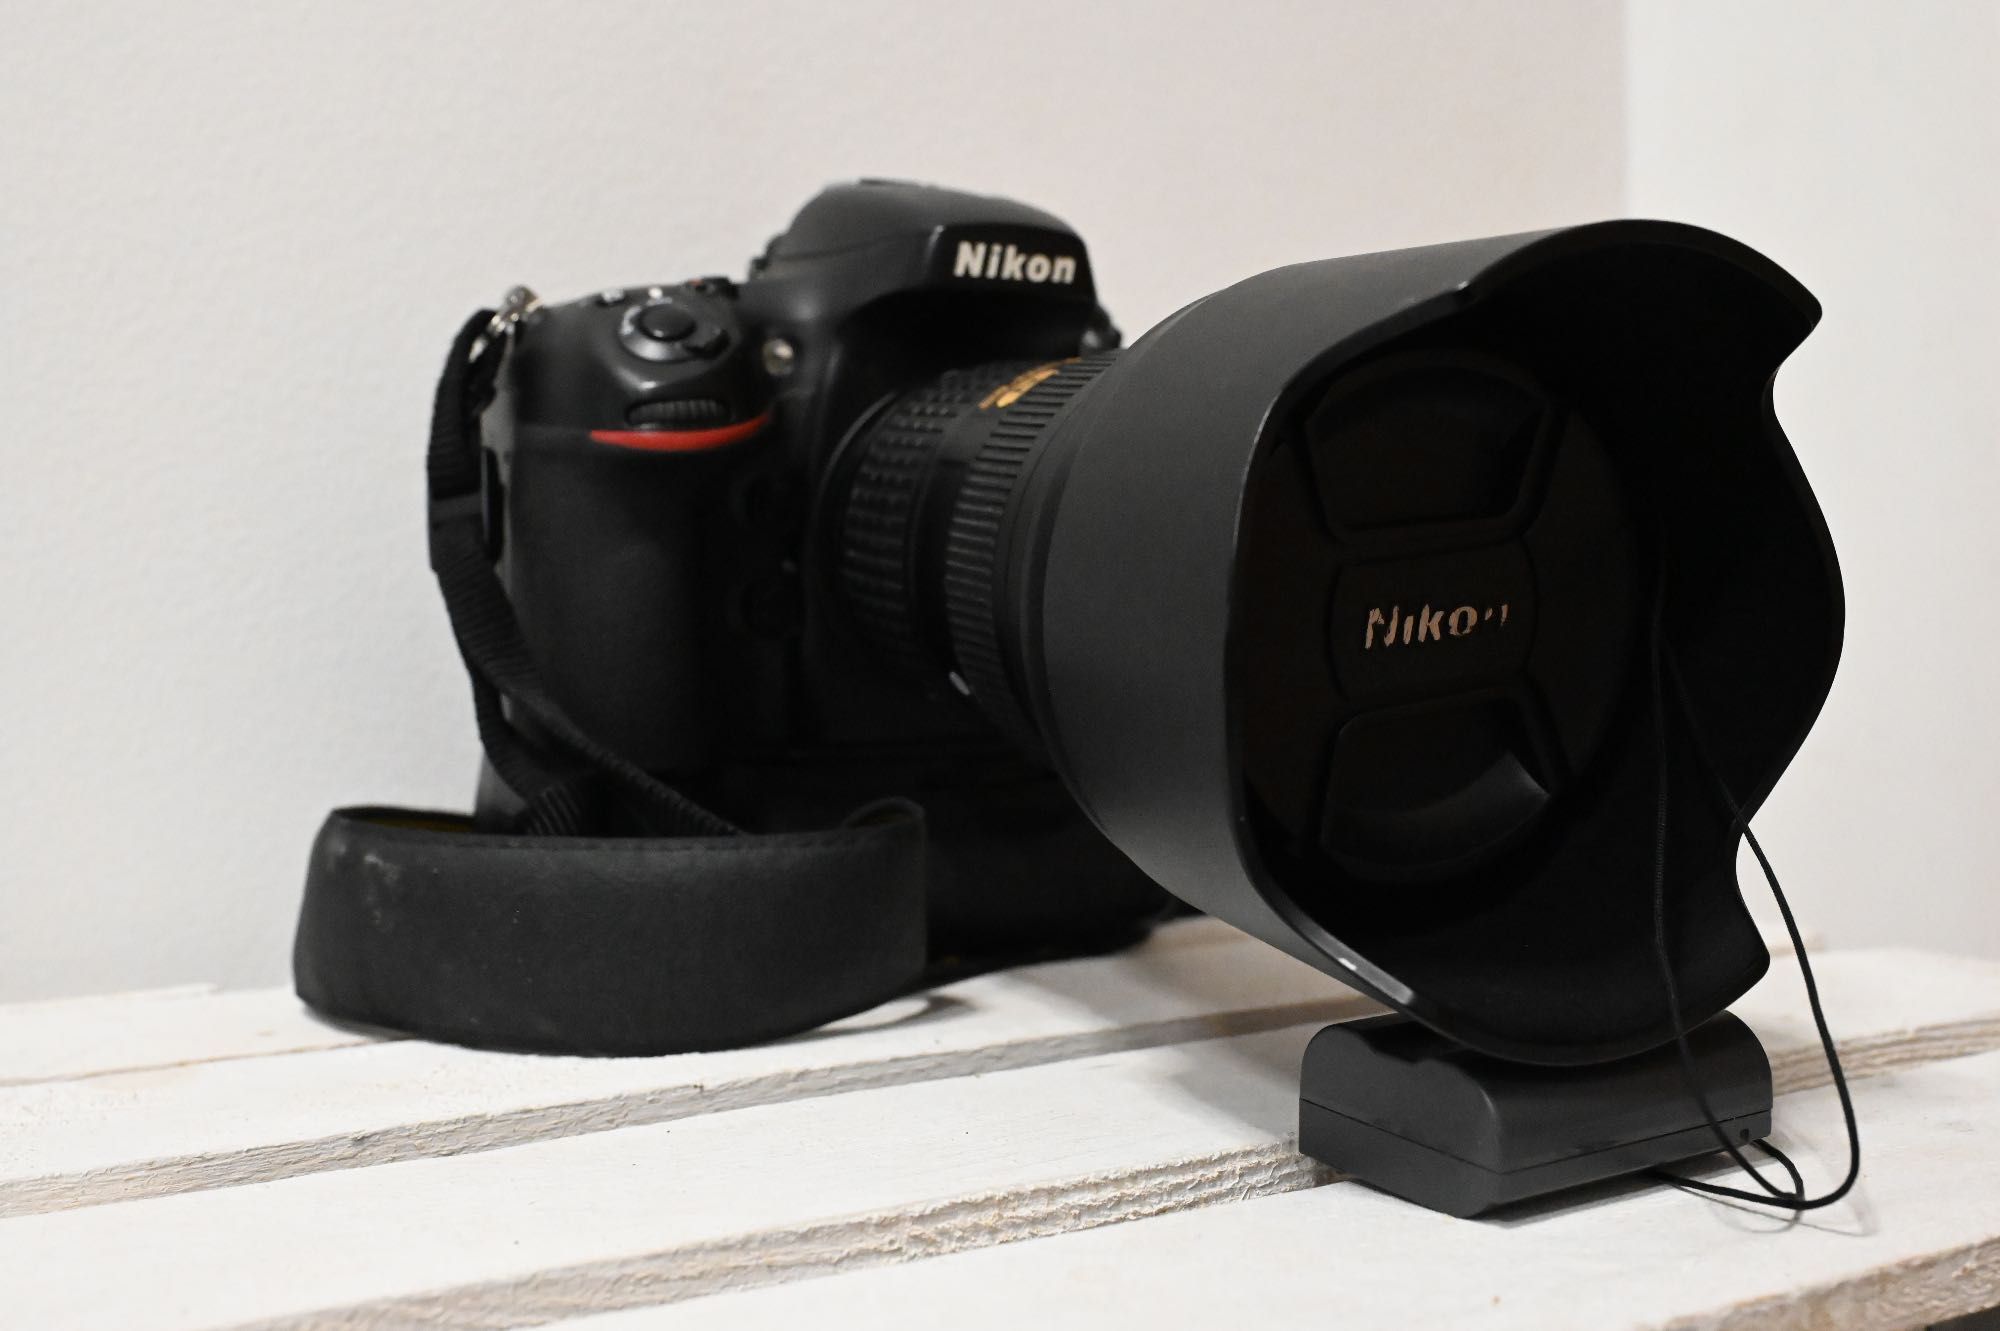 Nikon D800 + Nikon MB-D12 + Nikkor 50mm f/1.4